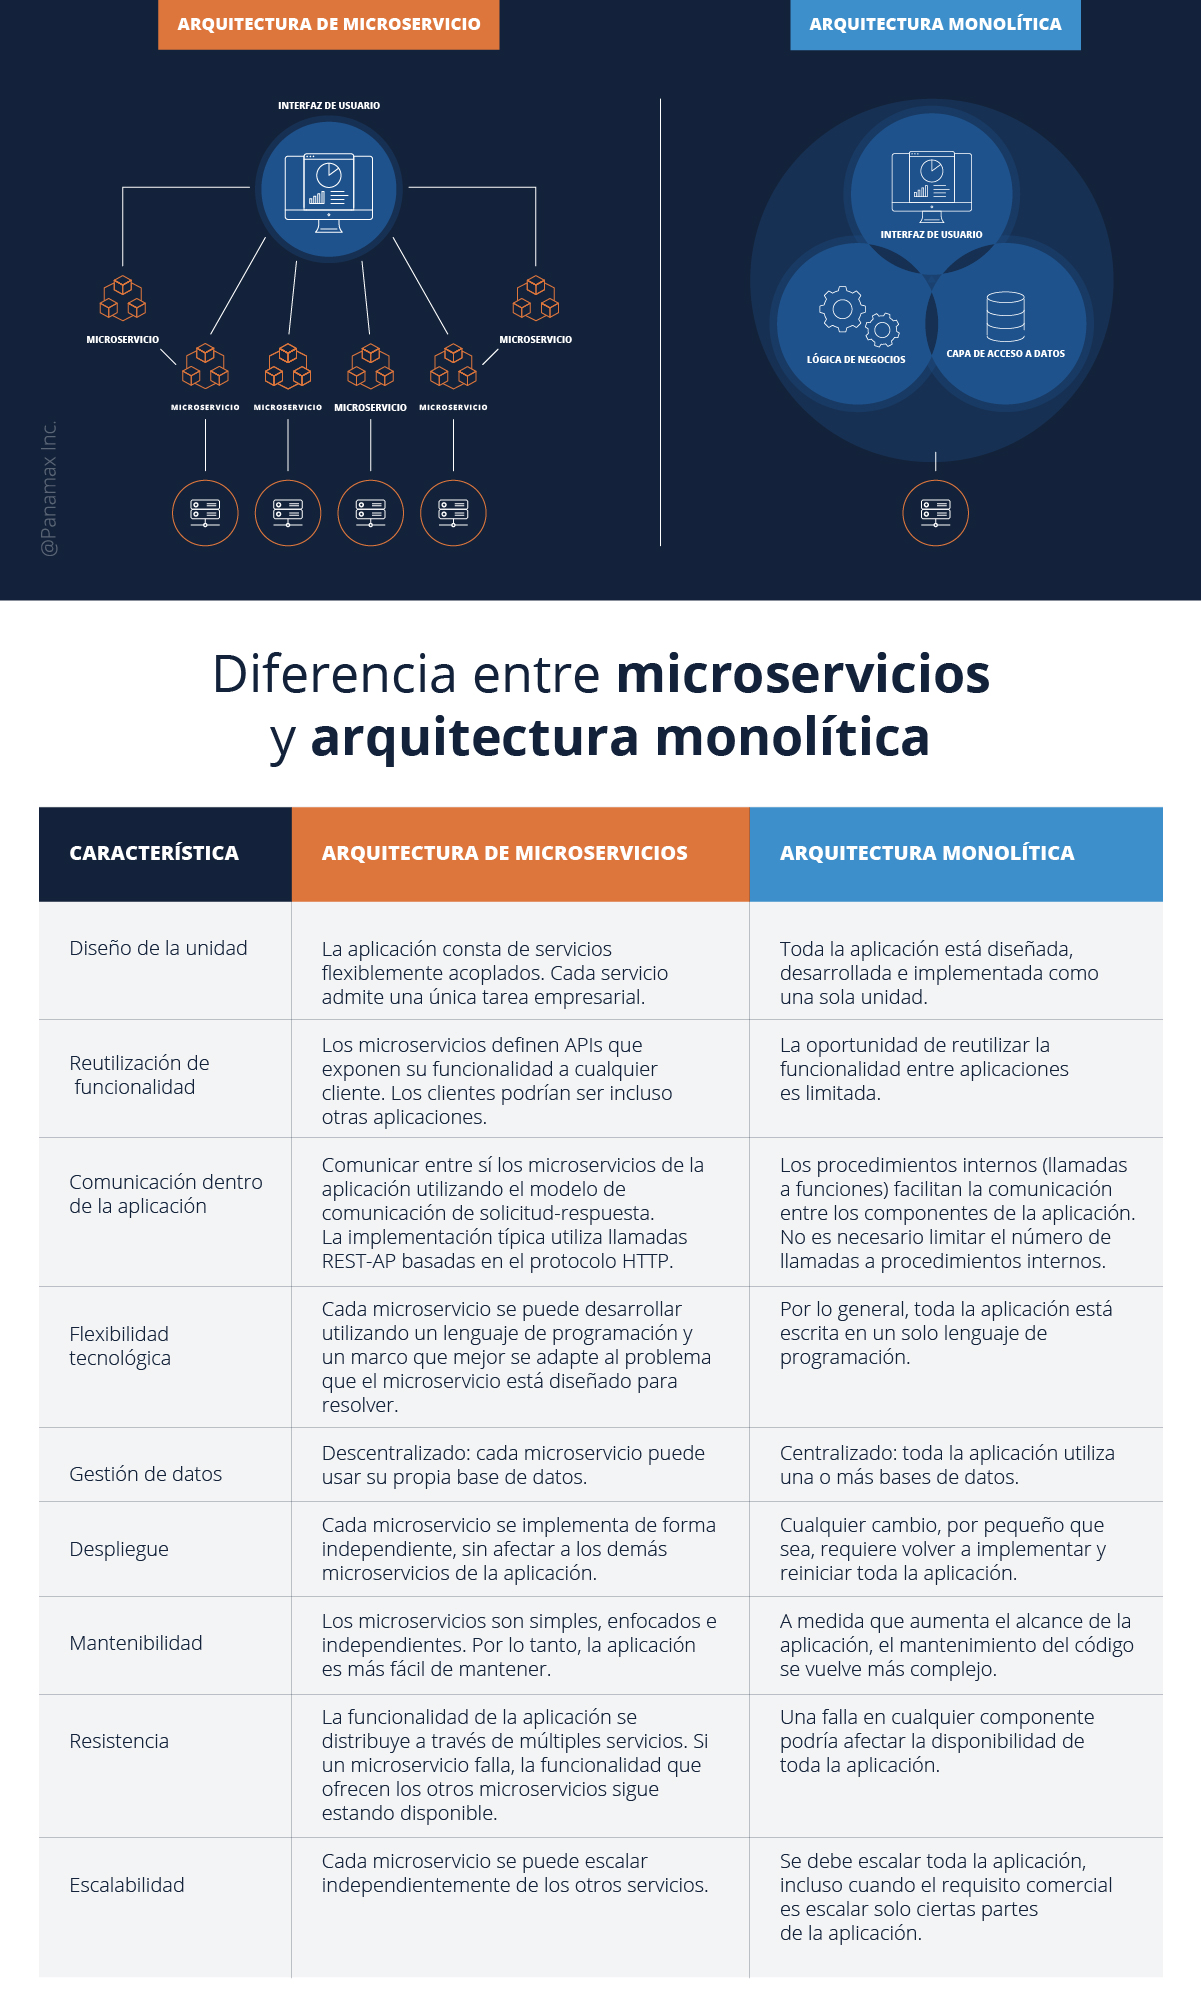 Diferencia entre microservicios y arquitectura monolítica